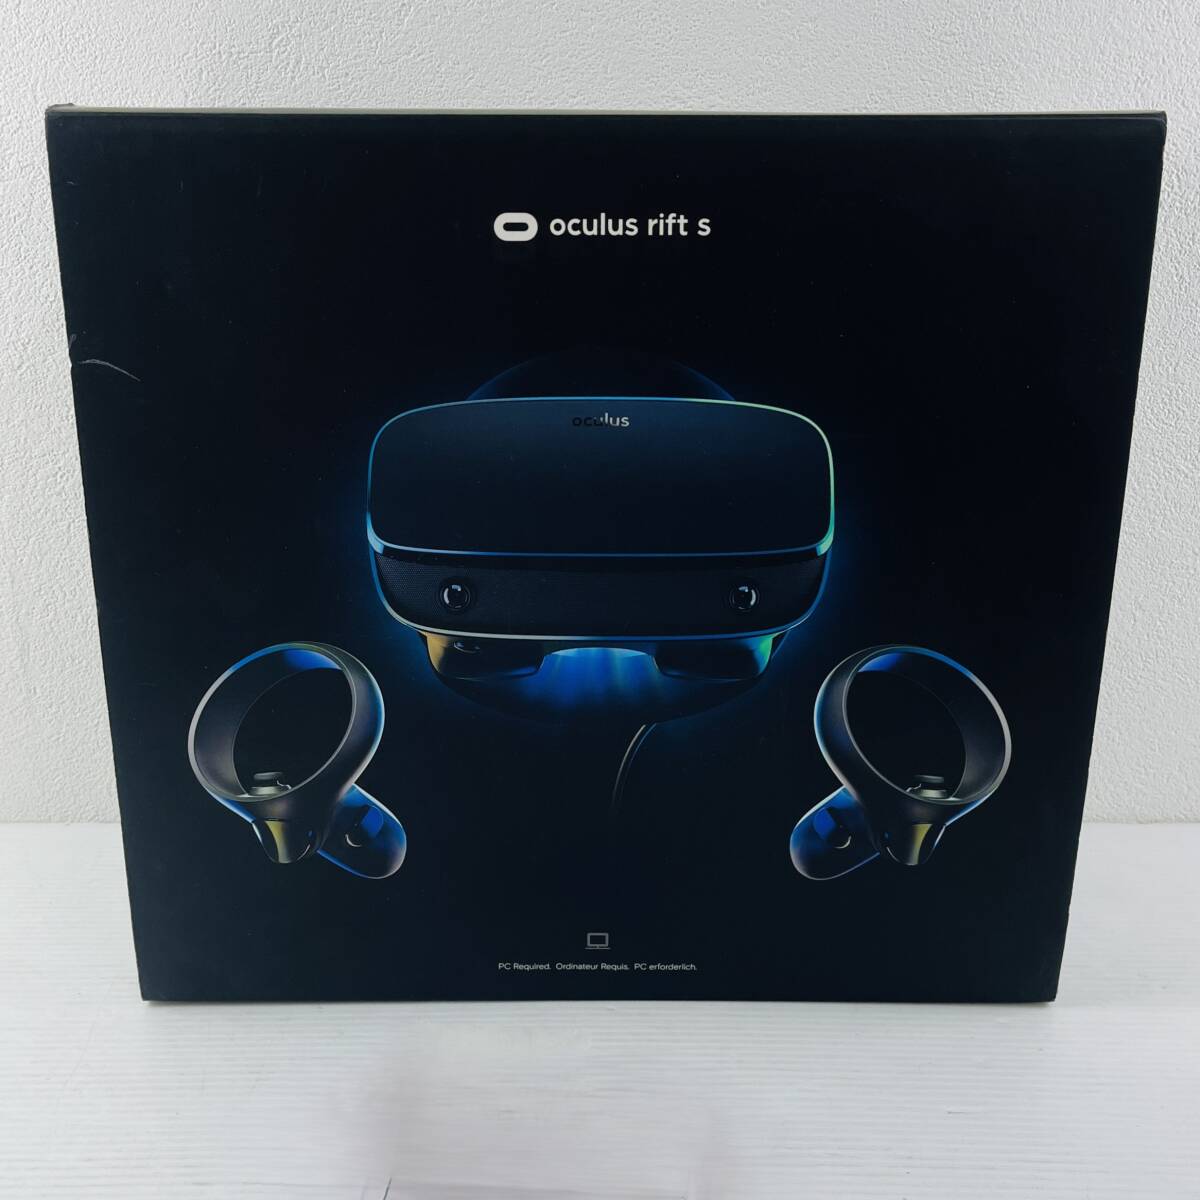 207[ работоспособность не проверялась ]Lenovo oculus Rift S PC подключение специальный высокая эффективность VR headset Touch контроллер ge-ming инструкция кабель с коробкой 